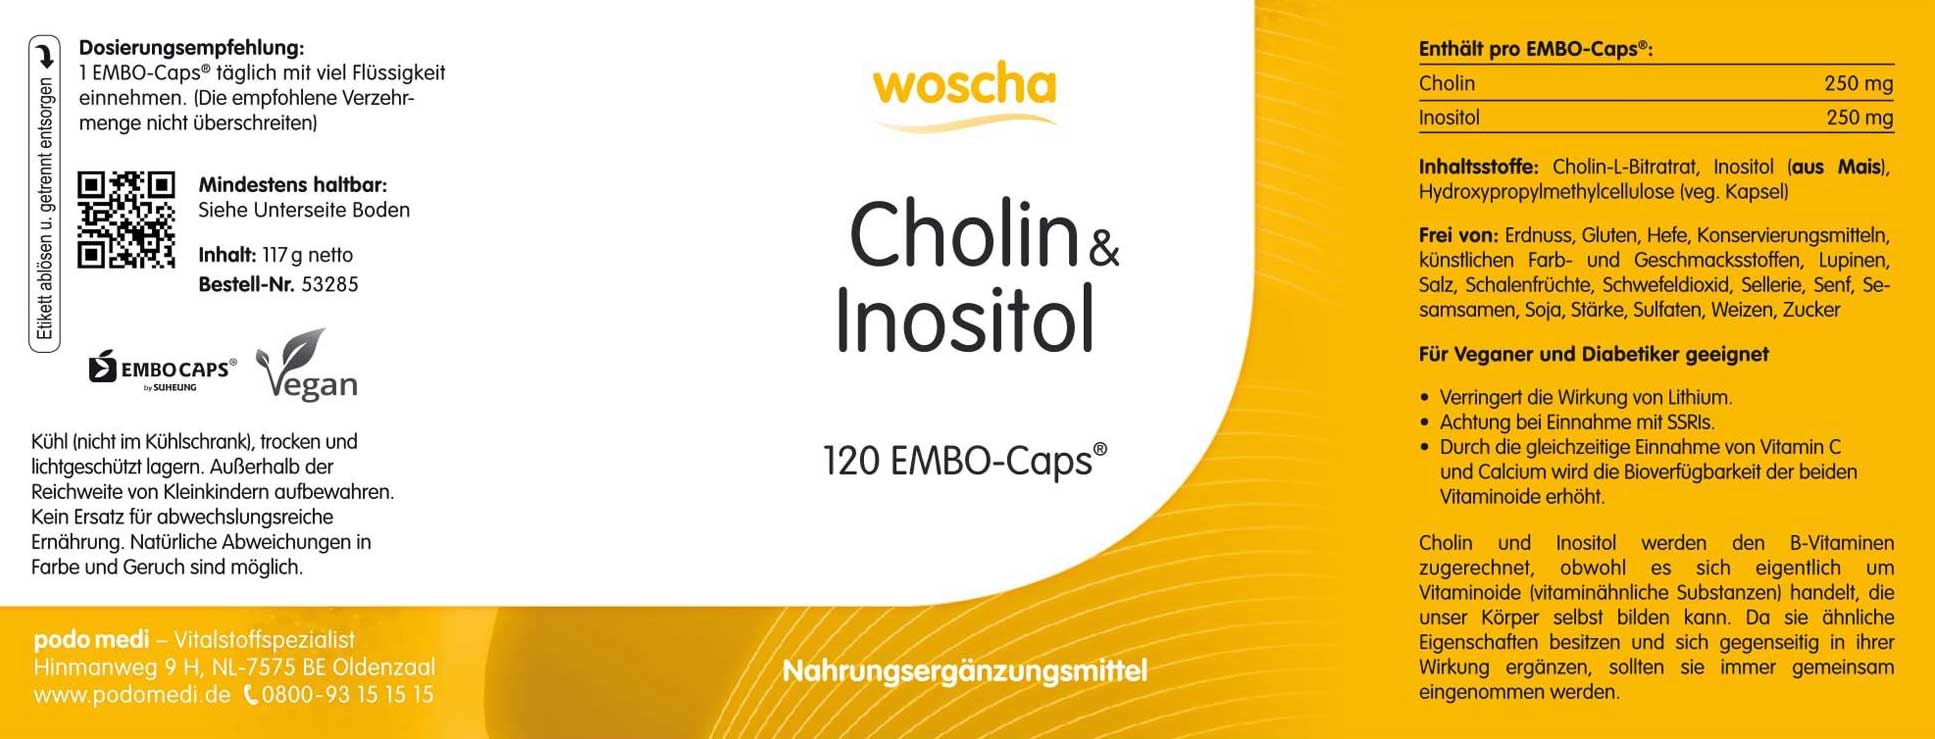 Woscha Cholin und Inositol von podo medi beinhaltet 120 Kapseln Etikett